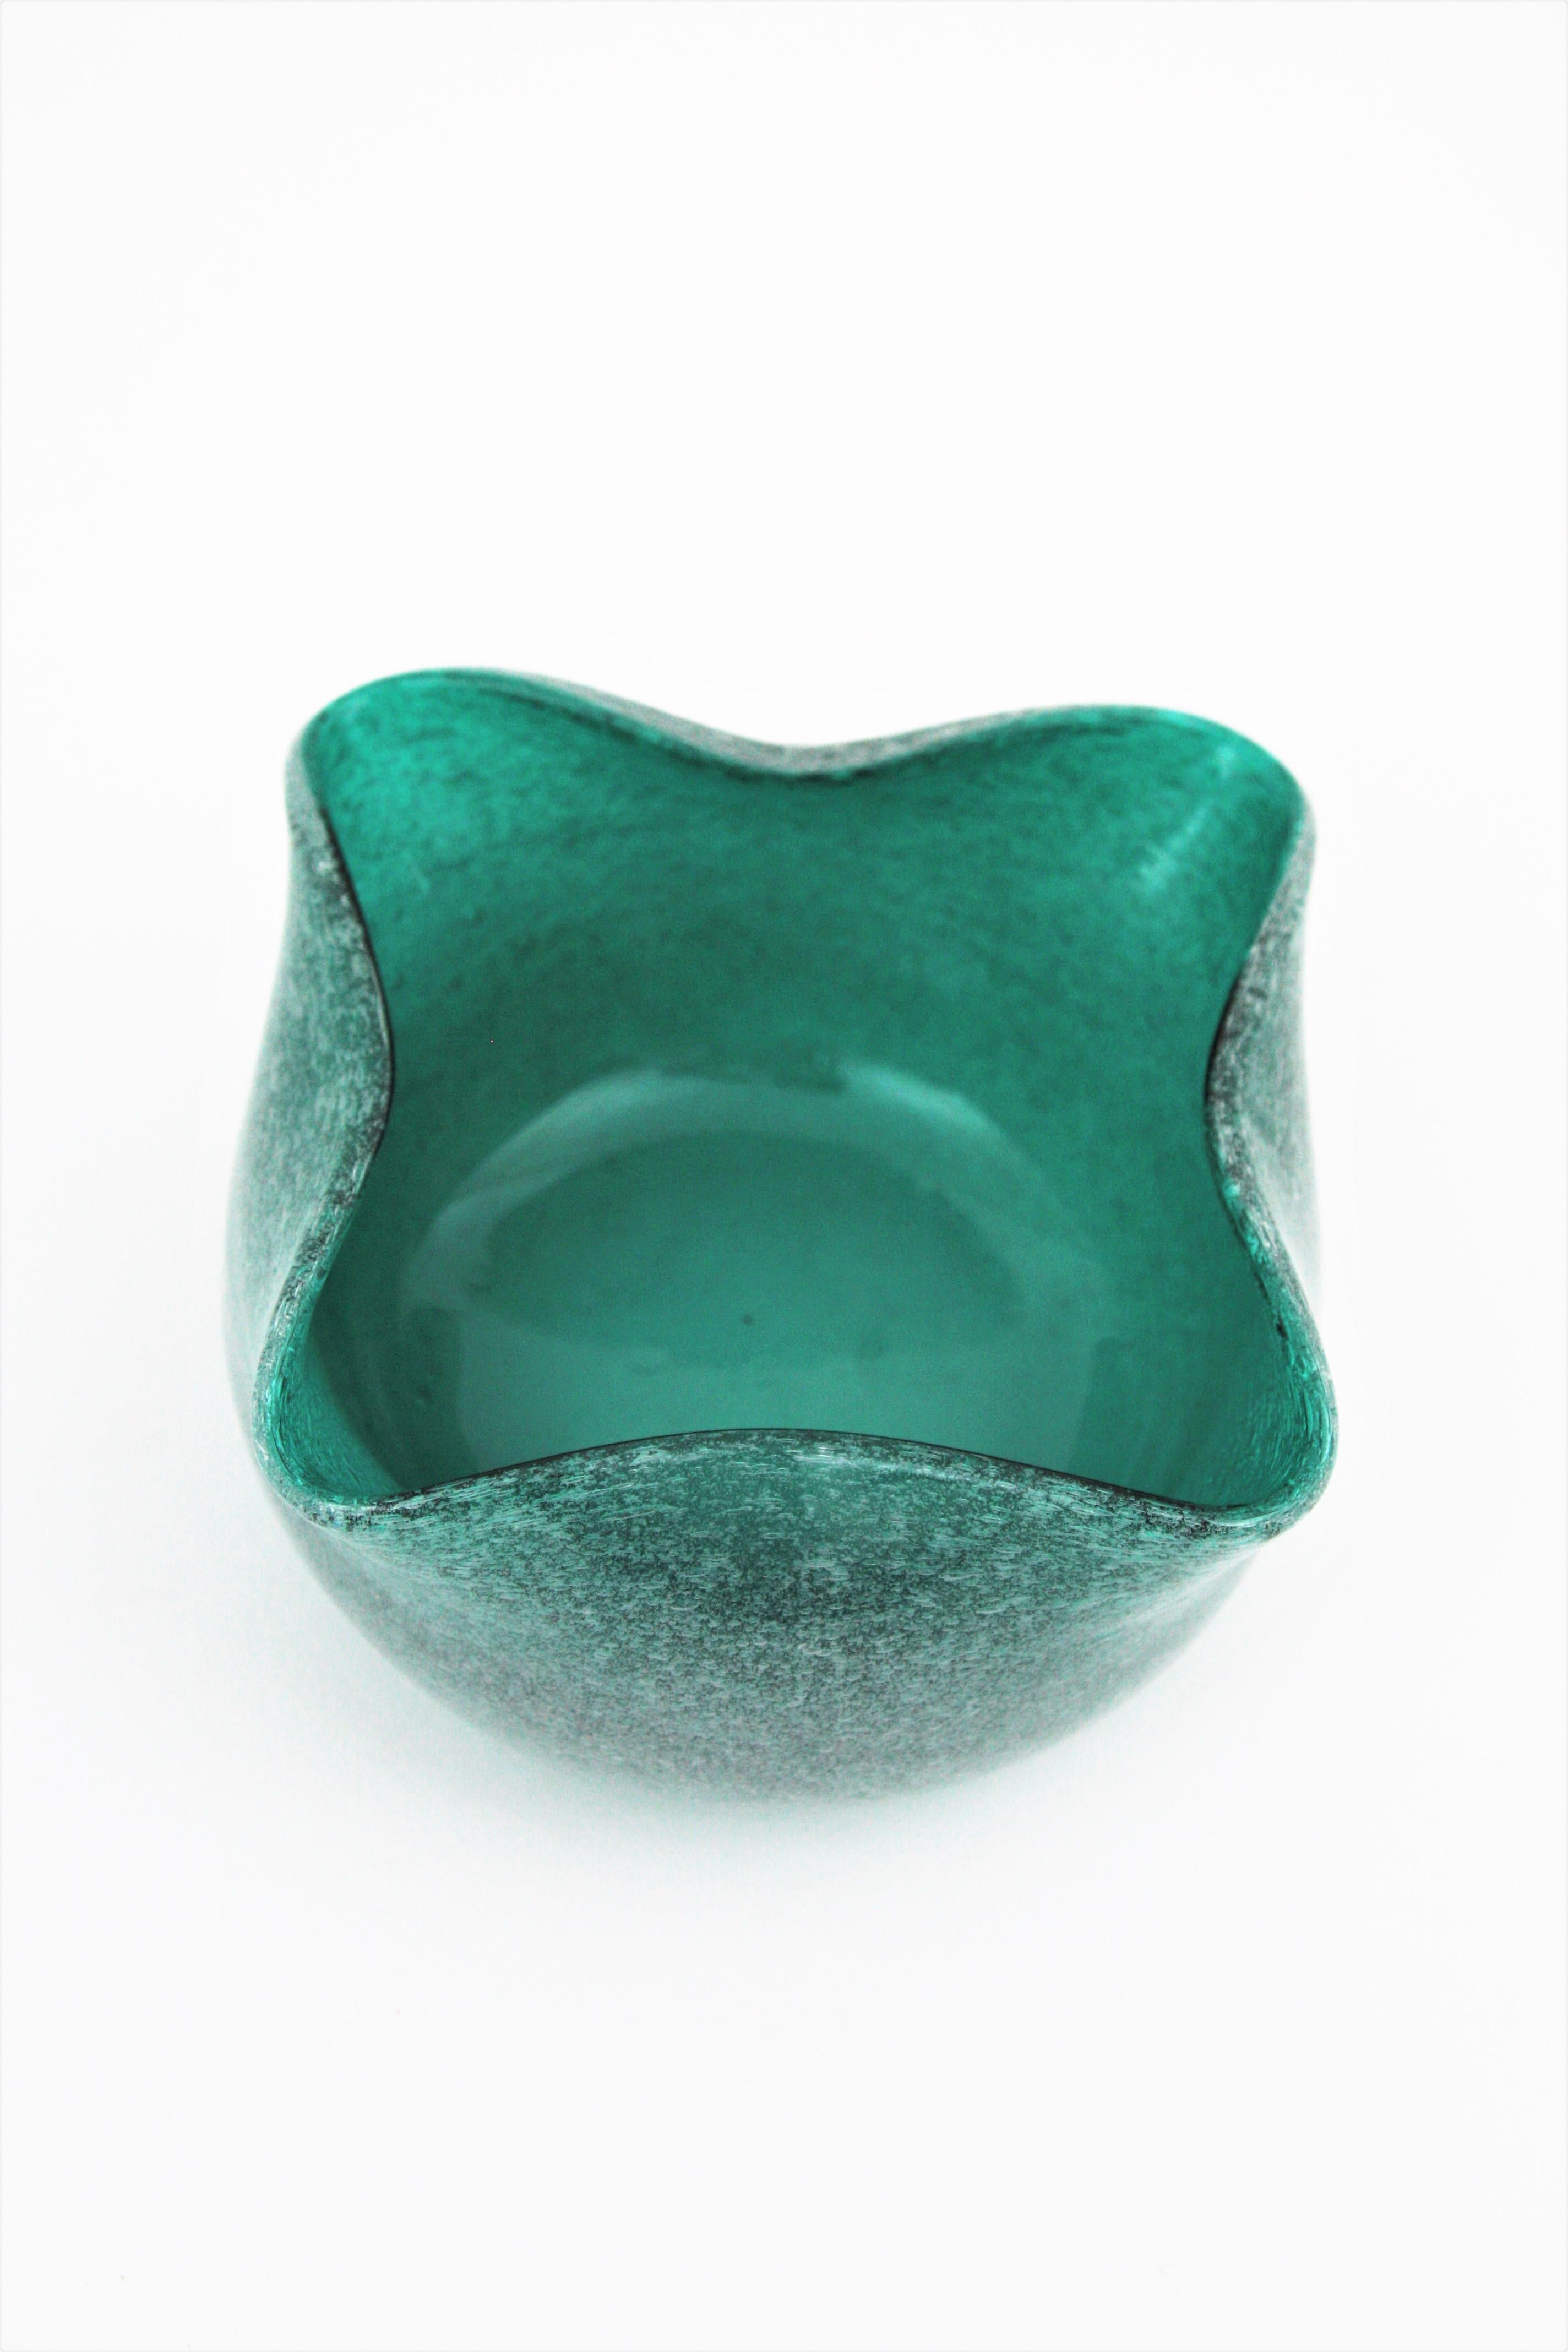 Seguso Murano Fazzoletto Pulegoso Bubbles Green Art Glass Bowl In Excellent Condition For Sale In Barcelona, ES